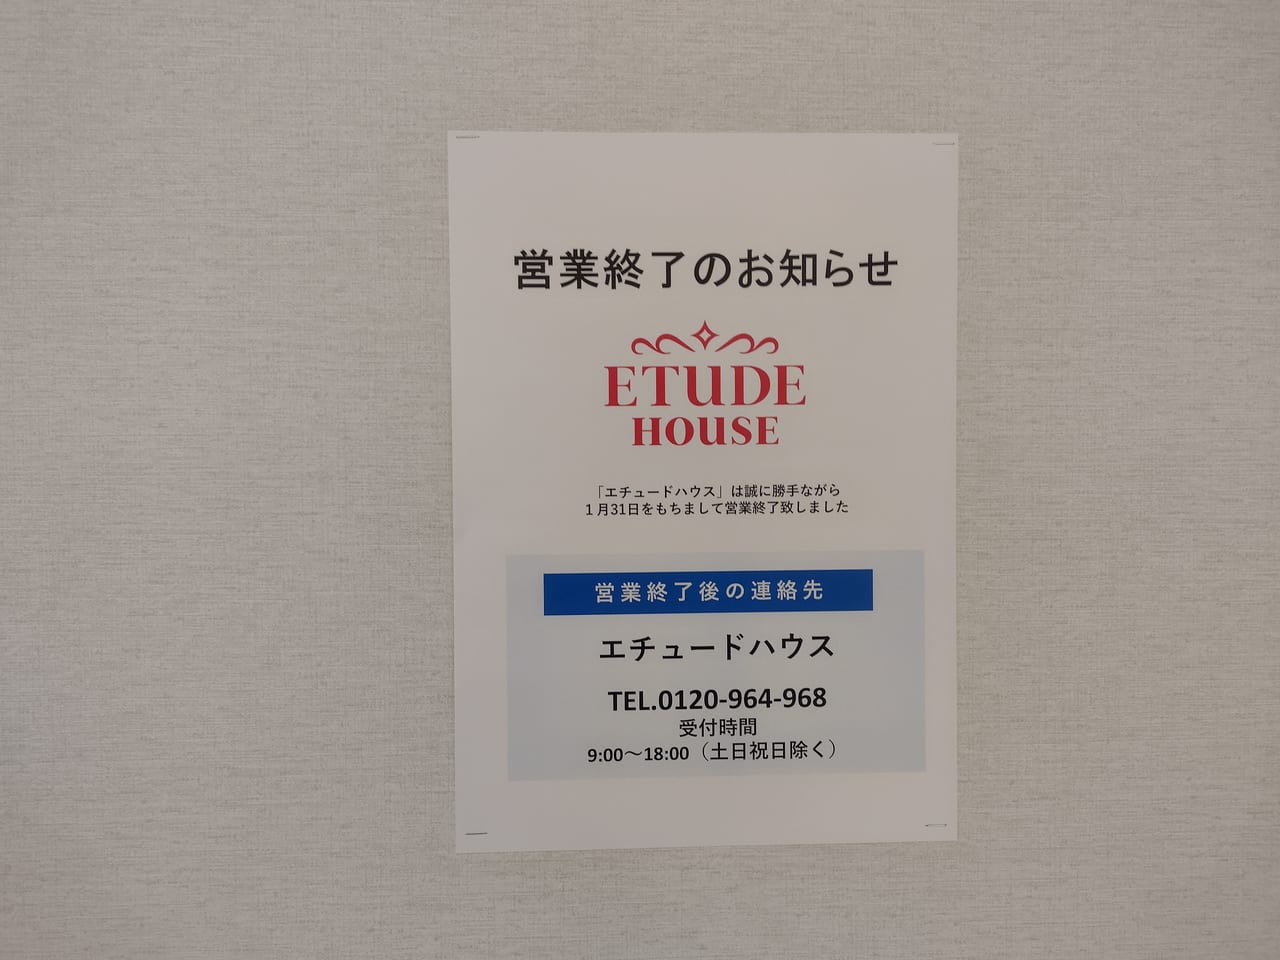 墨田区 悲報です 錦糸町parcoのエチュードハウスが21年1月末で閉店していました 号外net 墨田区